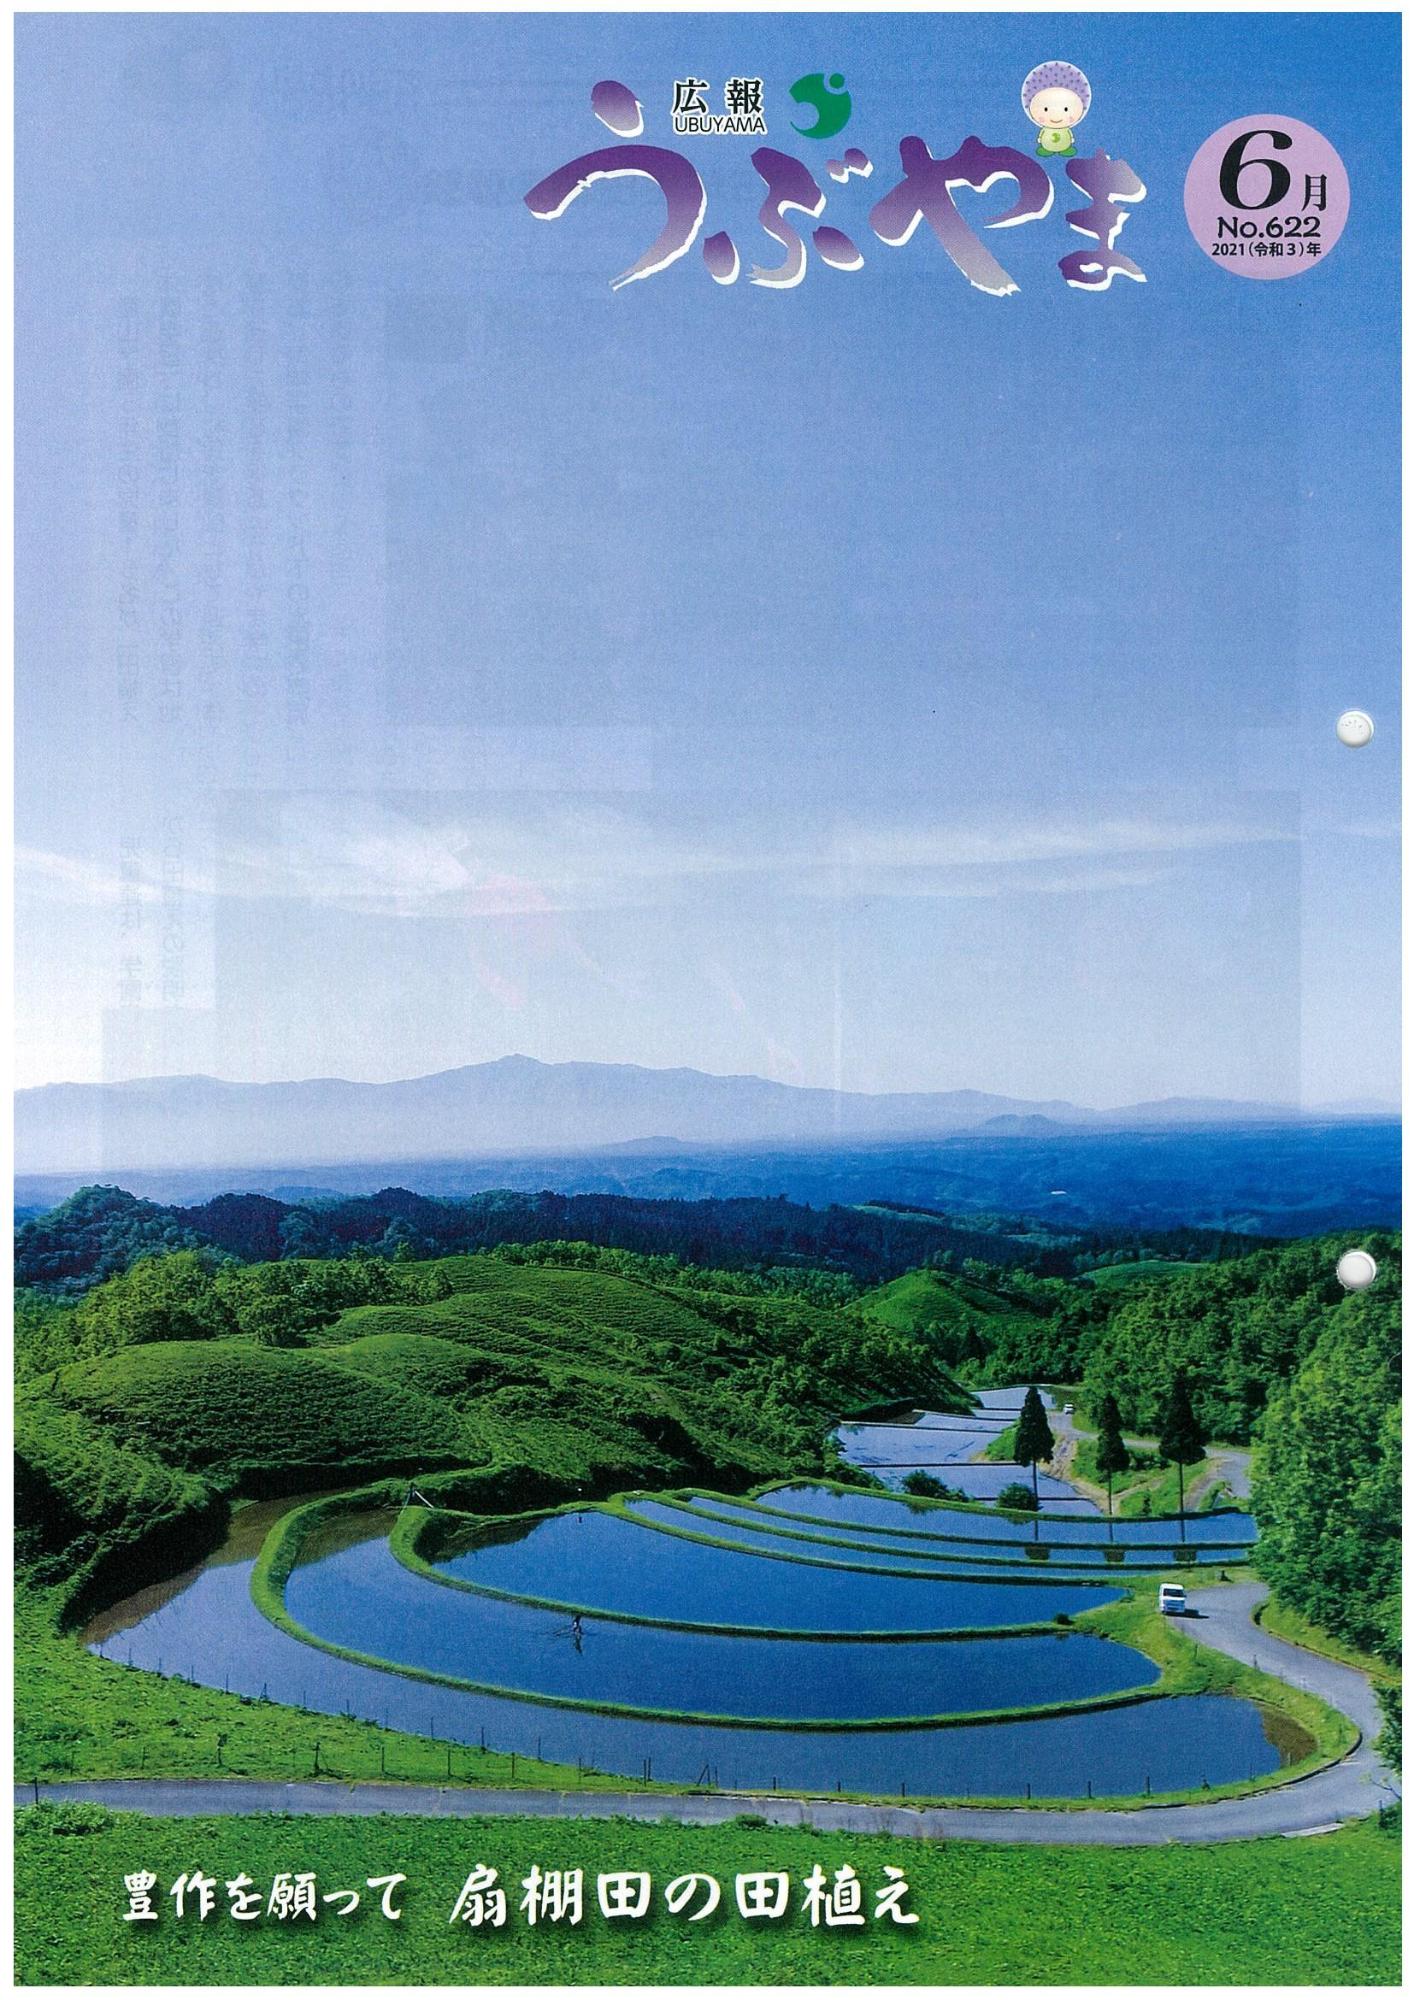 広報うぶやま2021年6月号の表紙の画像